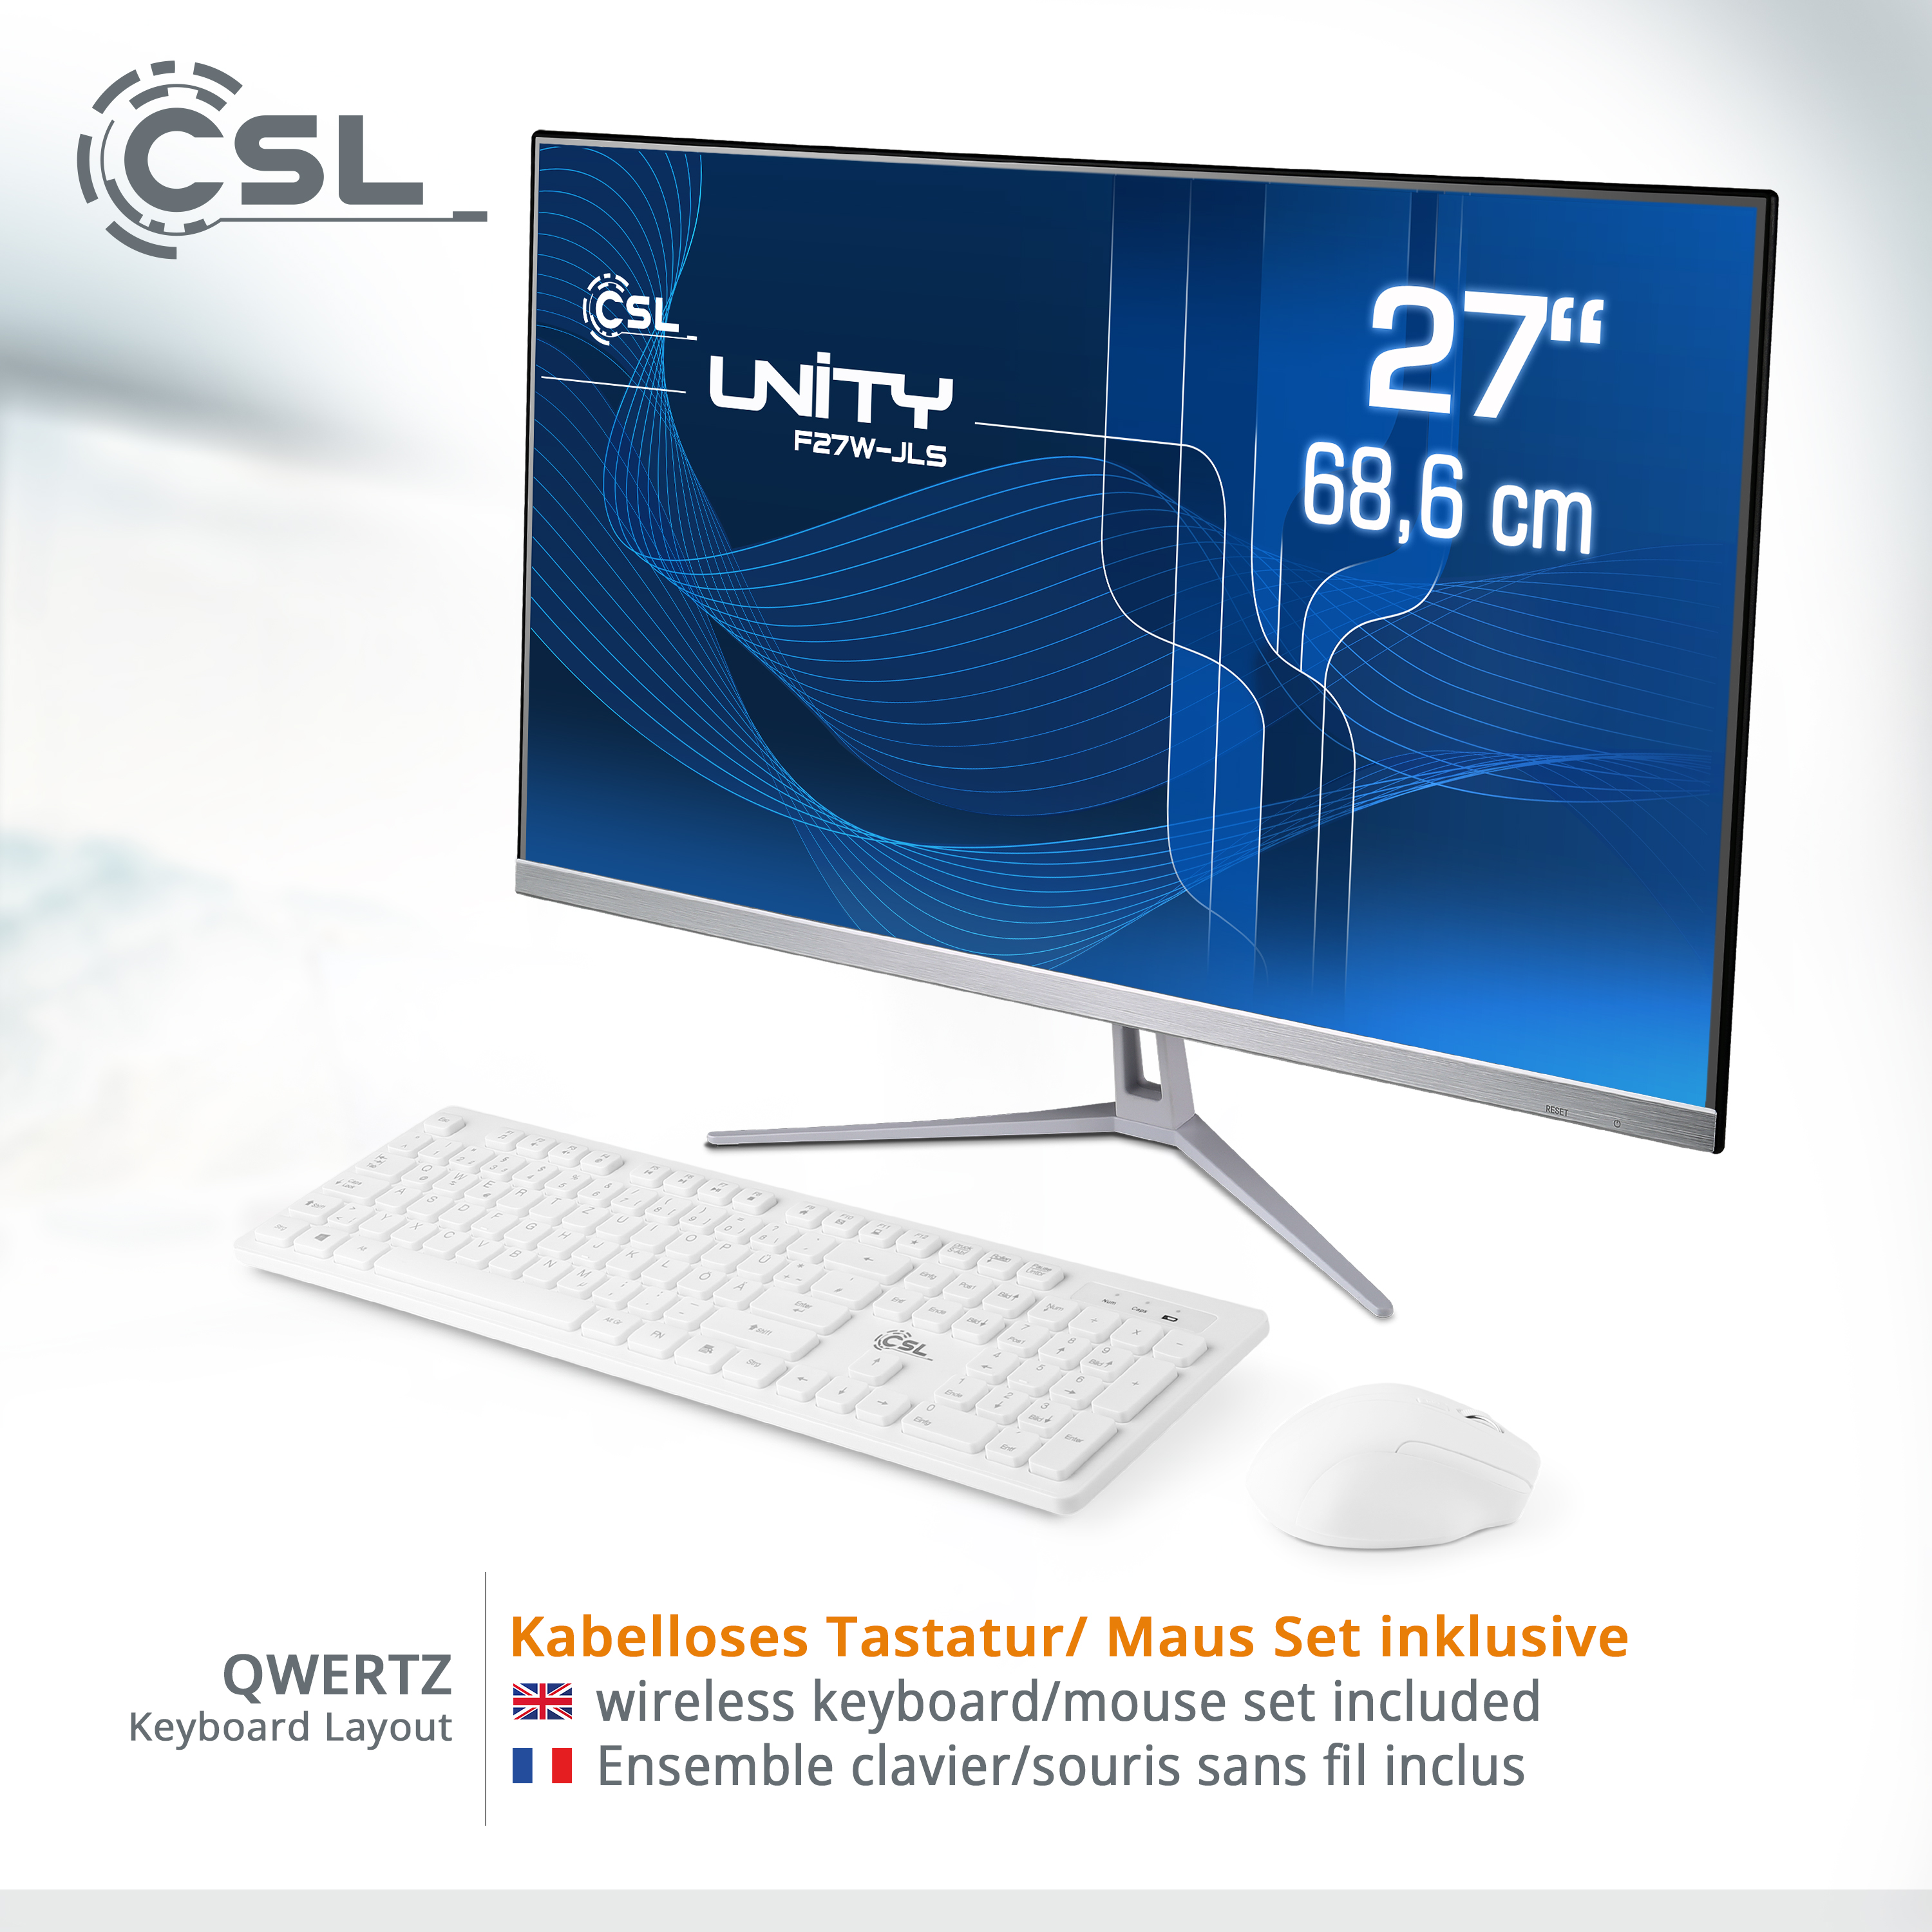 CSL Unity F27W-JLS Pentium / 1000 weiß 11 Display, Pro, 27 SSD, 1000 Zoll UHD 16 / GB All-in-One-PC 16 RAM, RAM GB mit Win Intel® GB / GB Graphics